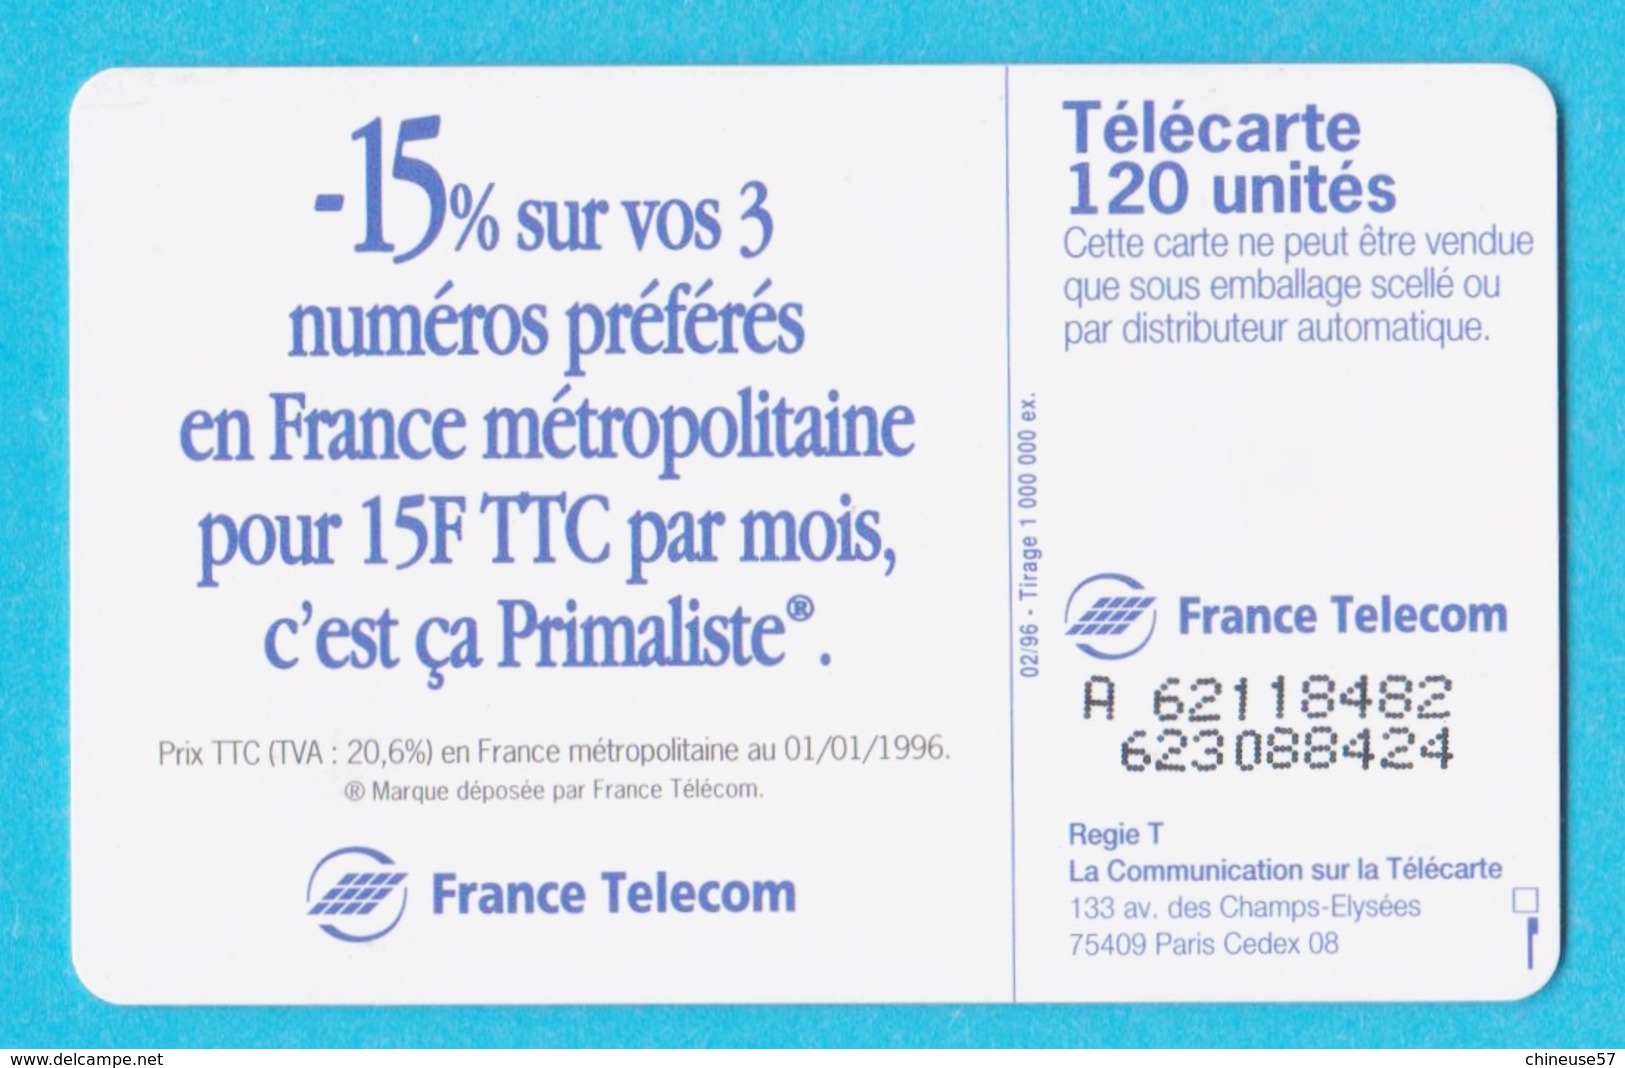 Télécarte 120 Primaliste De France Télécom - 120 Unità